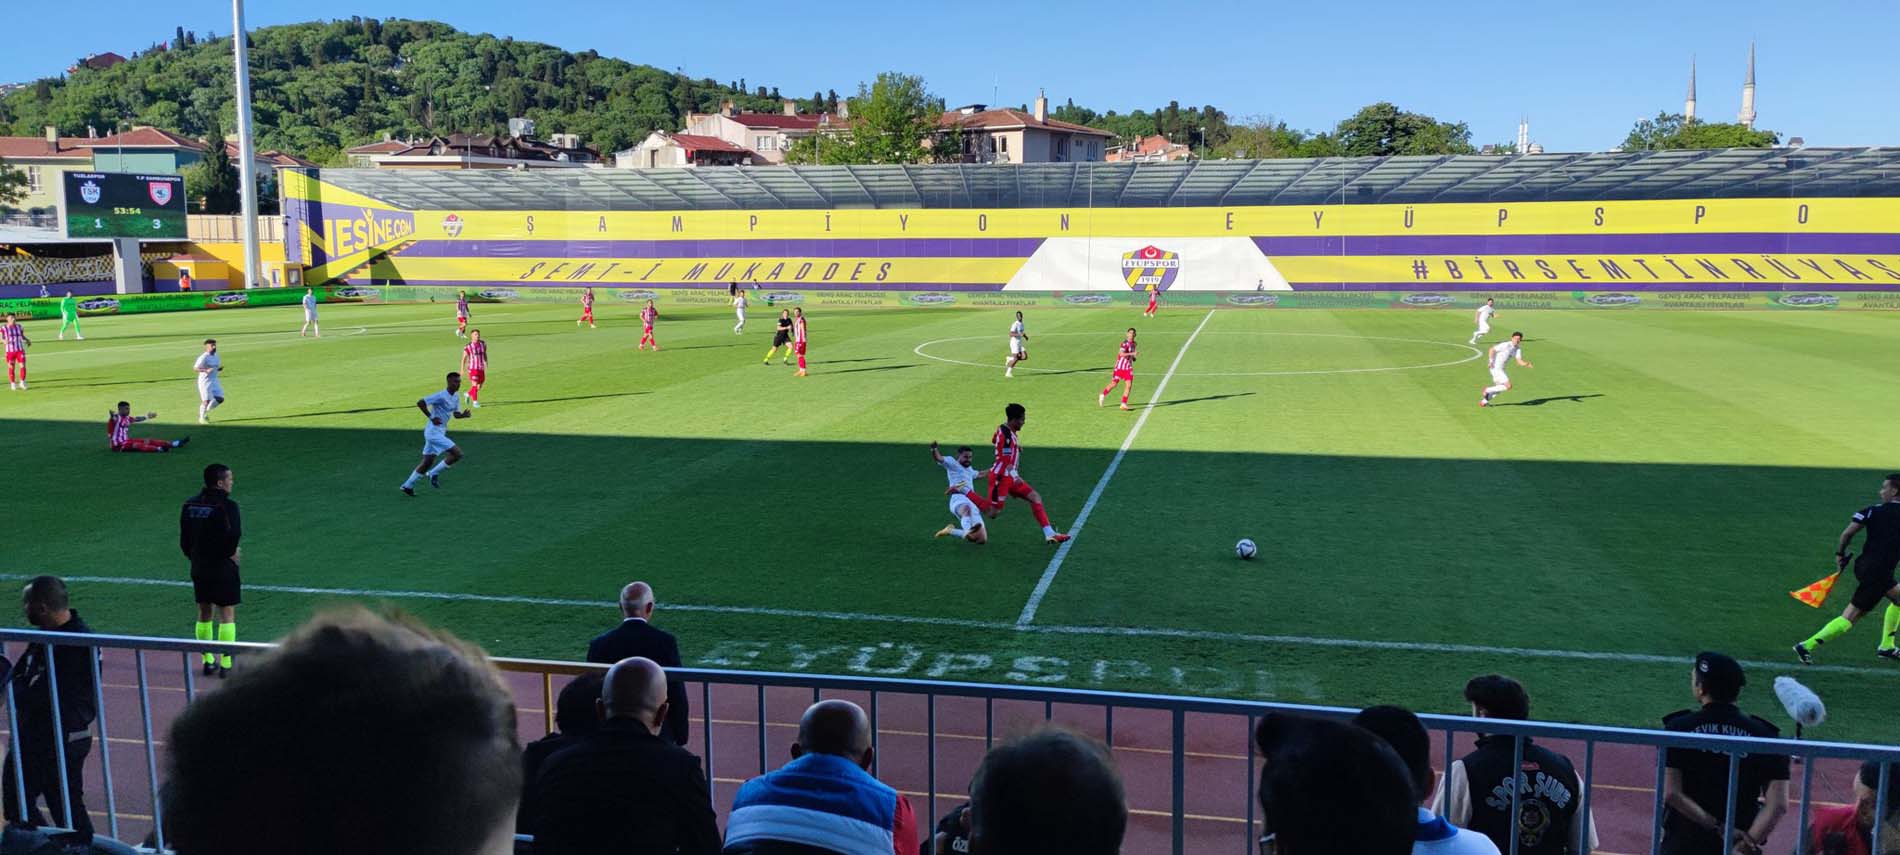 Tuzlaspor 2 - 4 Samsunspor | Maç sonucu